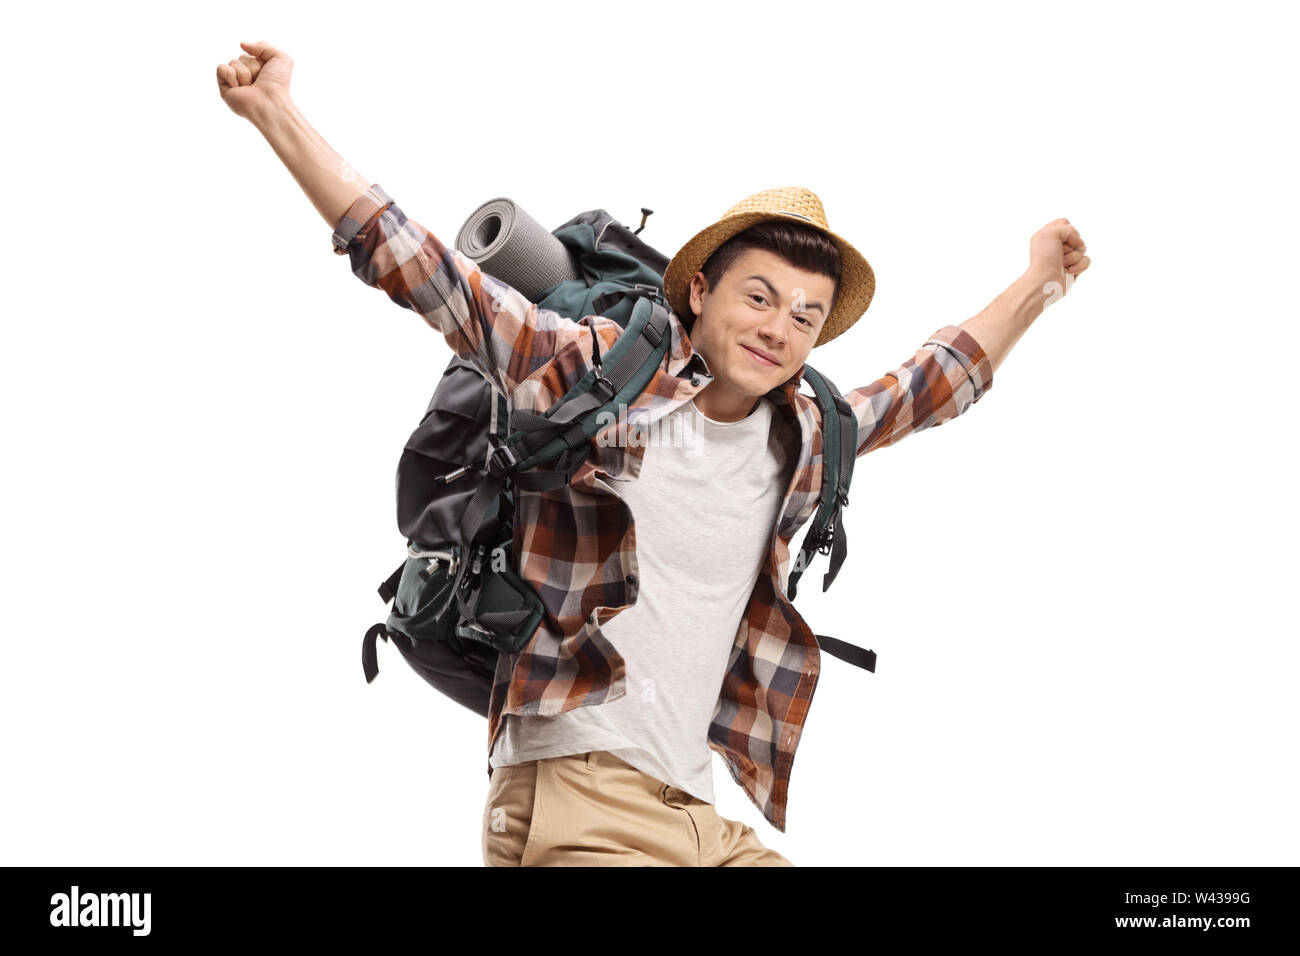 Junge männliche Backpacker springen und gestikulierend Glück auf weißem Hintergrund Stockfoto